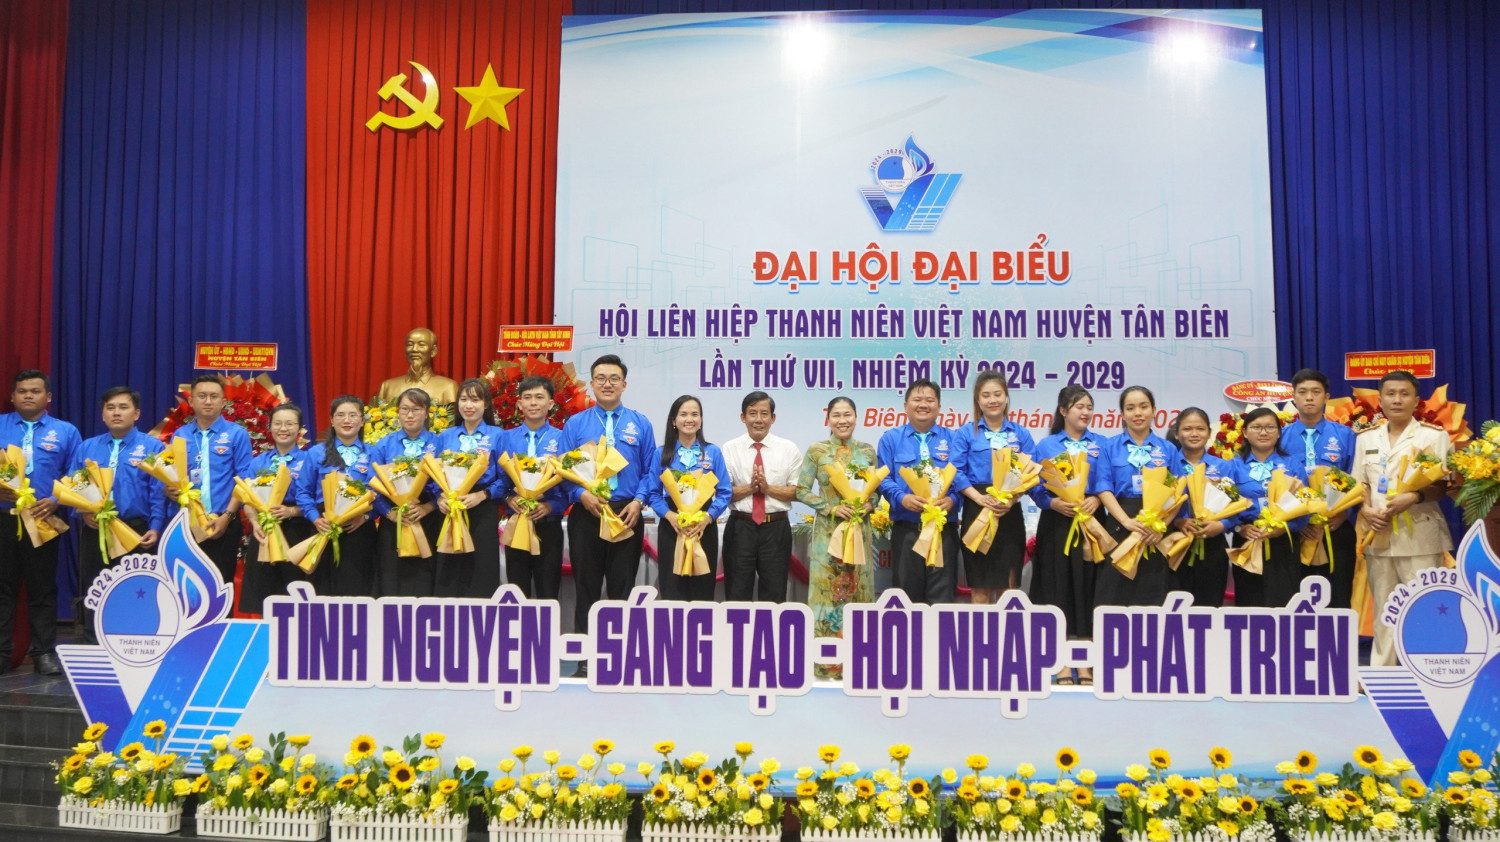 Đại hội Đại biểu Hội LHTN Việt Nam huyện Tân Biên lần thứ VII, nhiệm kỳ 2024-2029